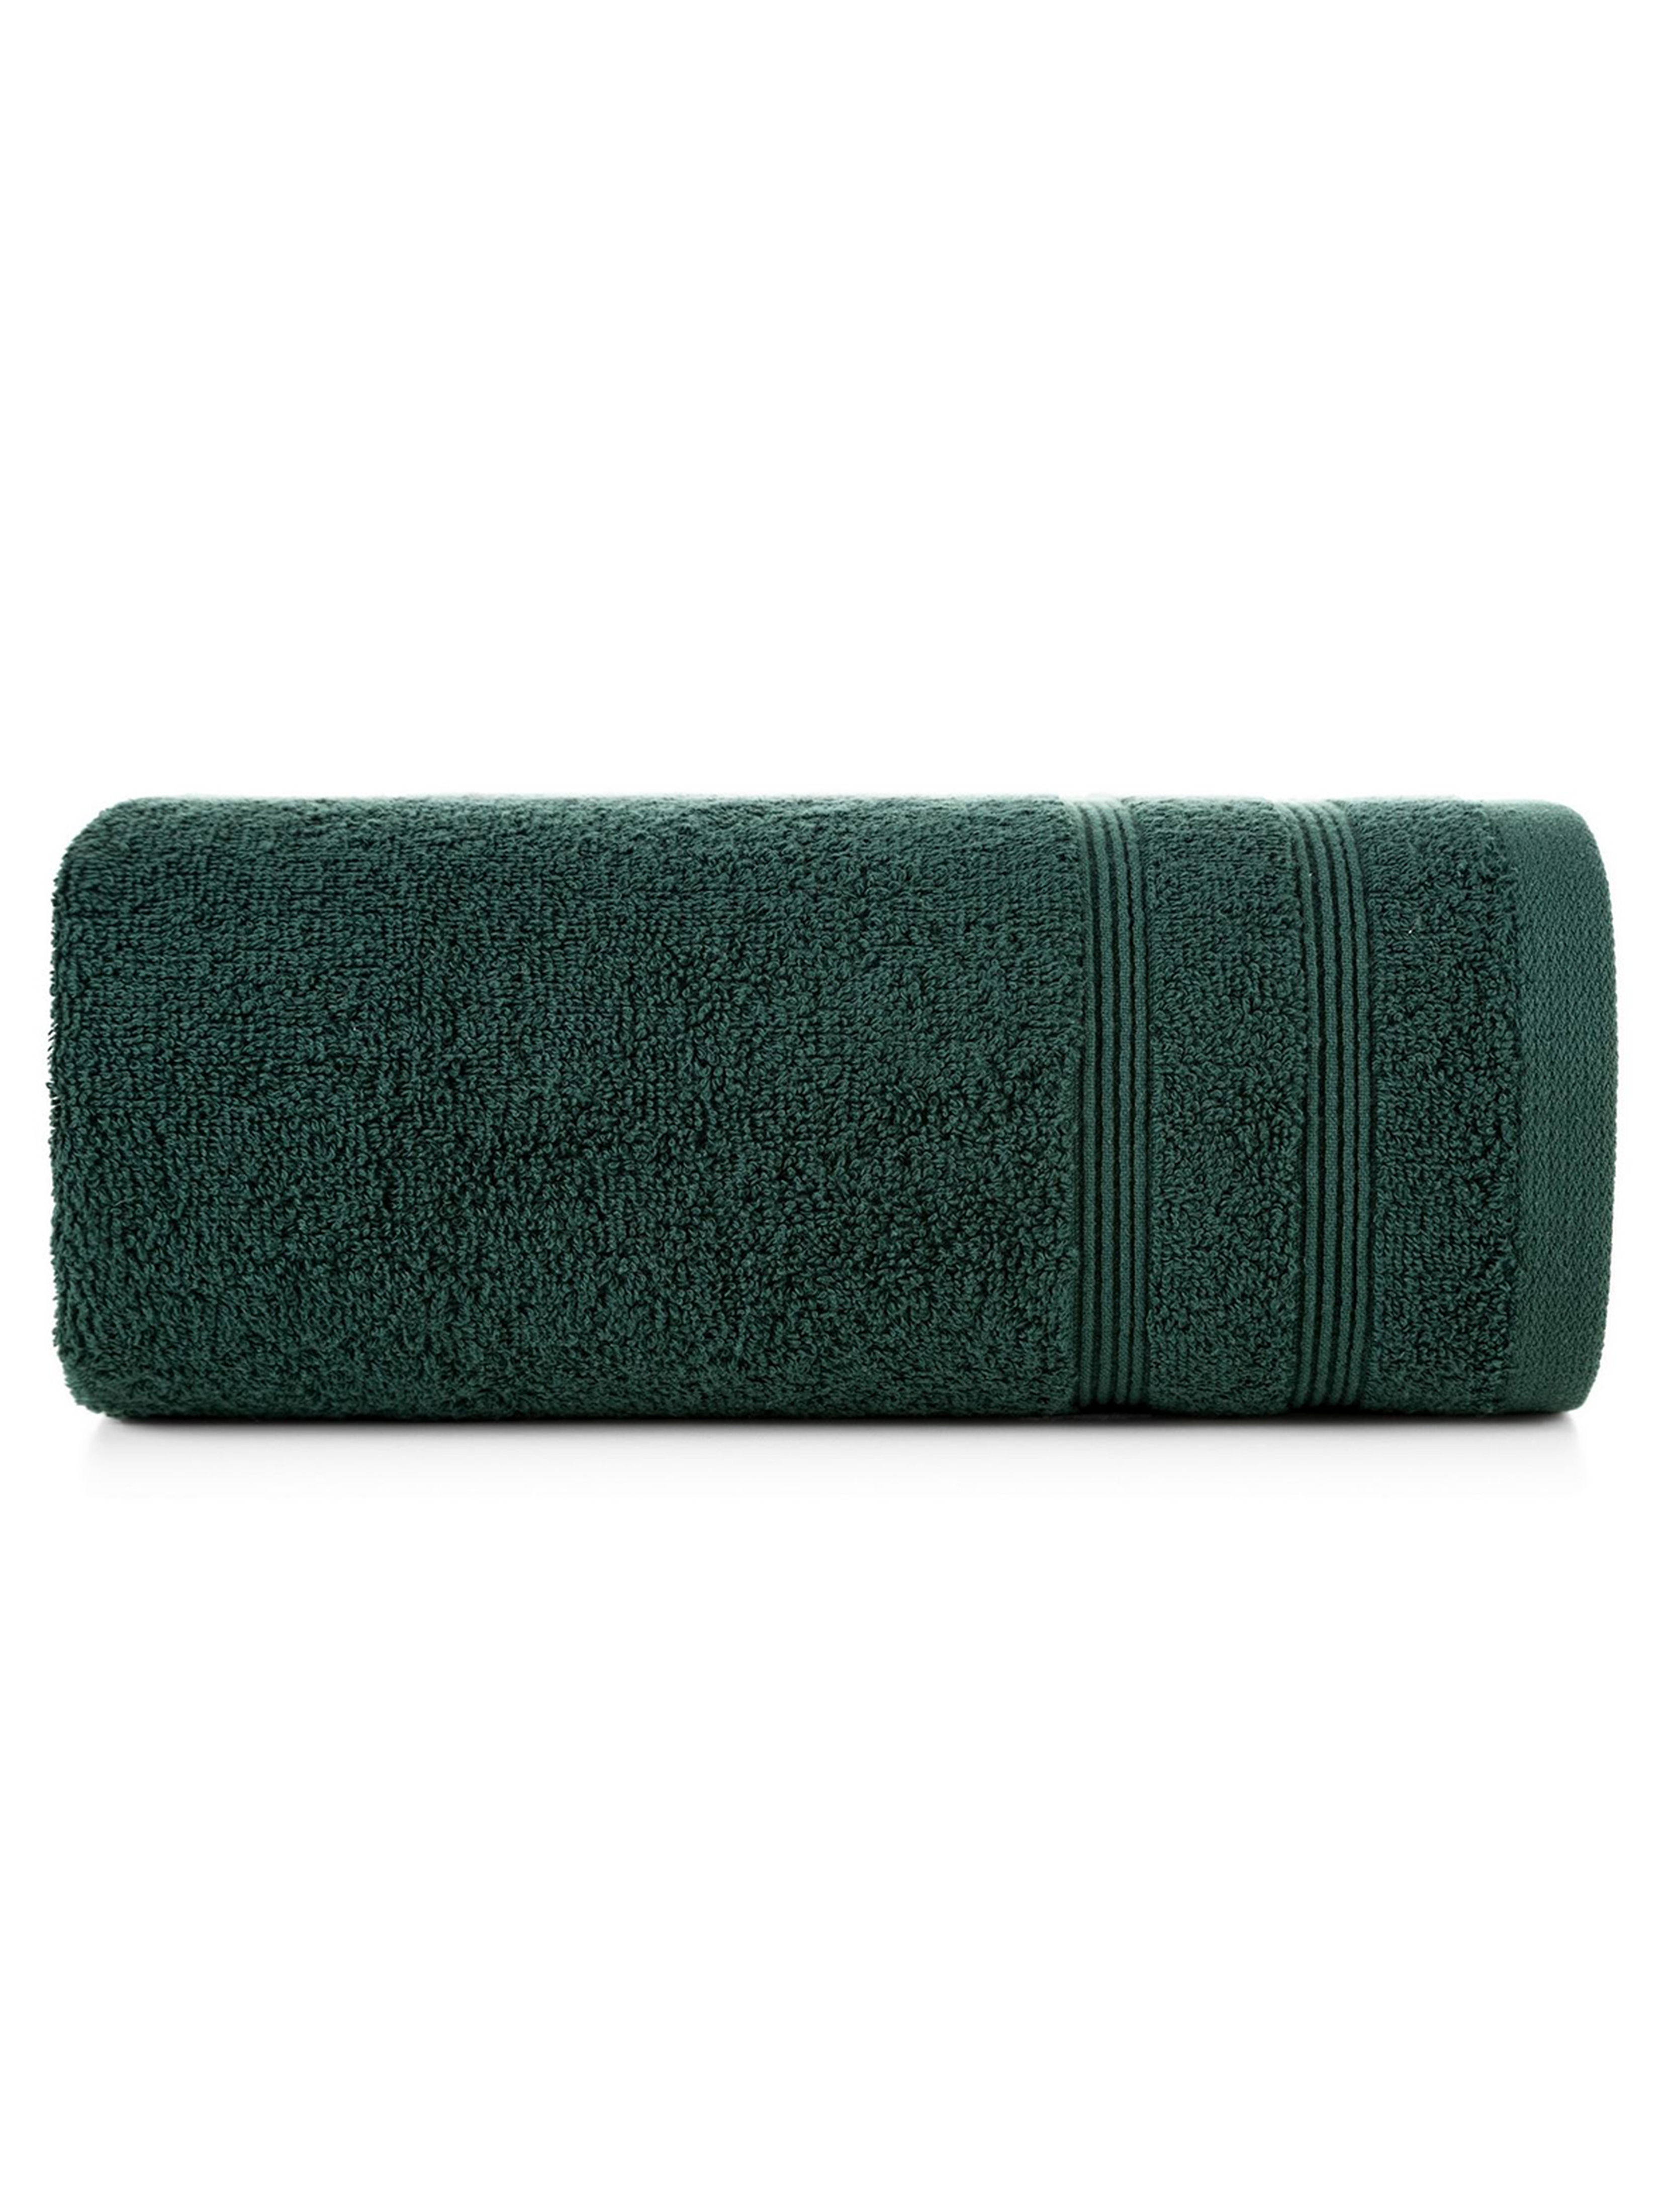 Ręcznik Aline 50x90 cm - zielony